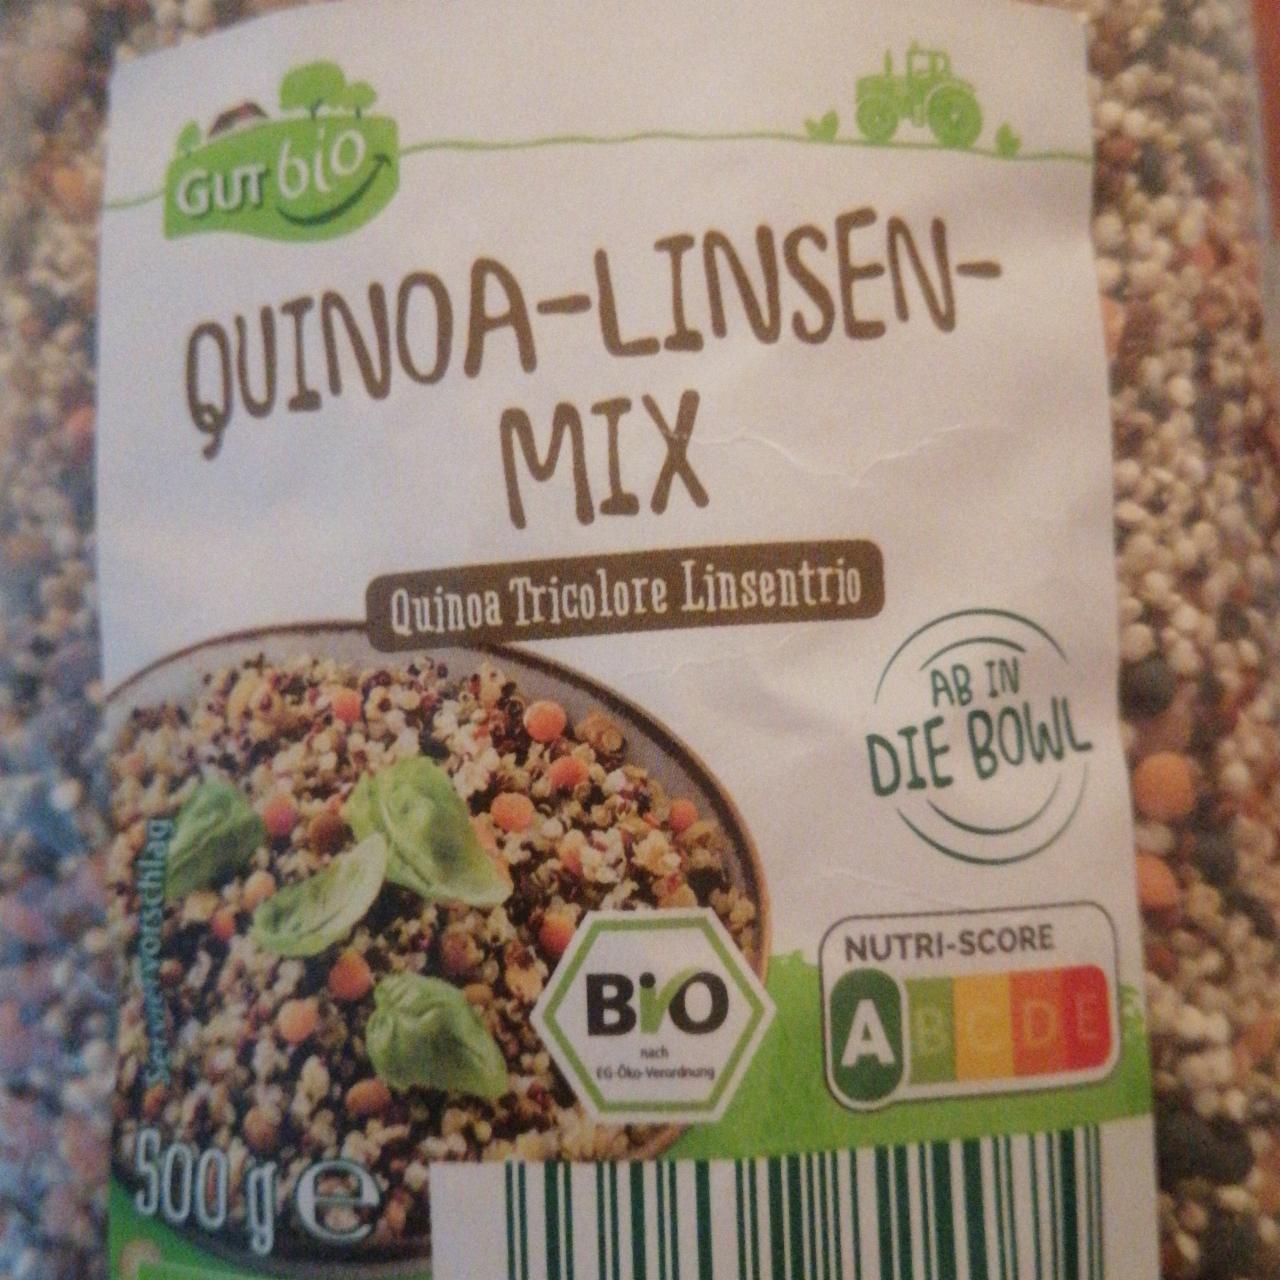 Fotografie - Bio Quinoa-Linsen-Mix GutBio